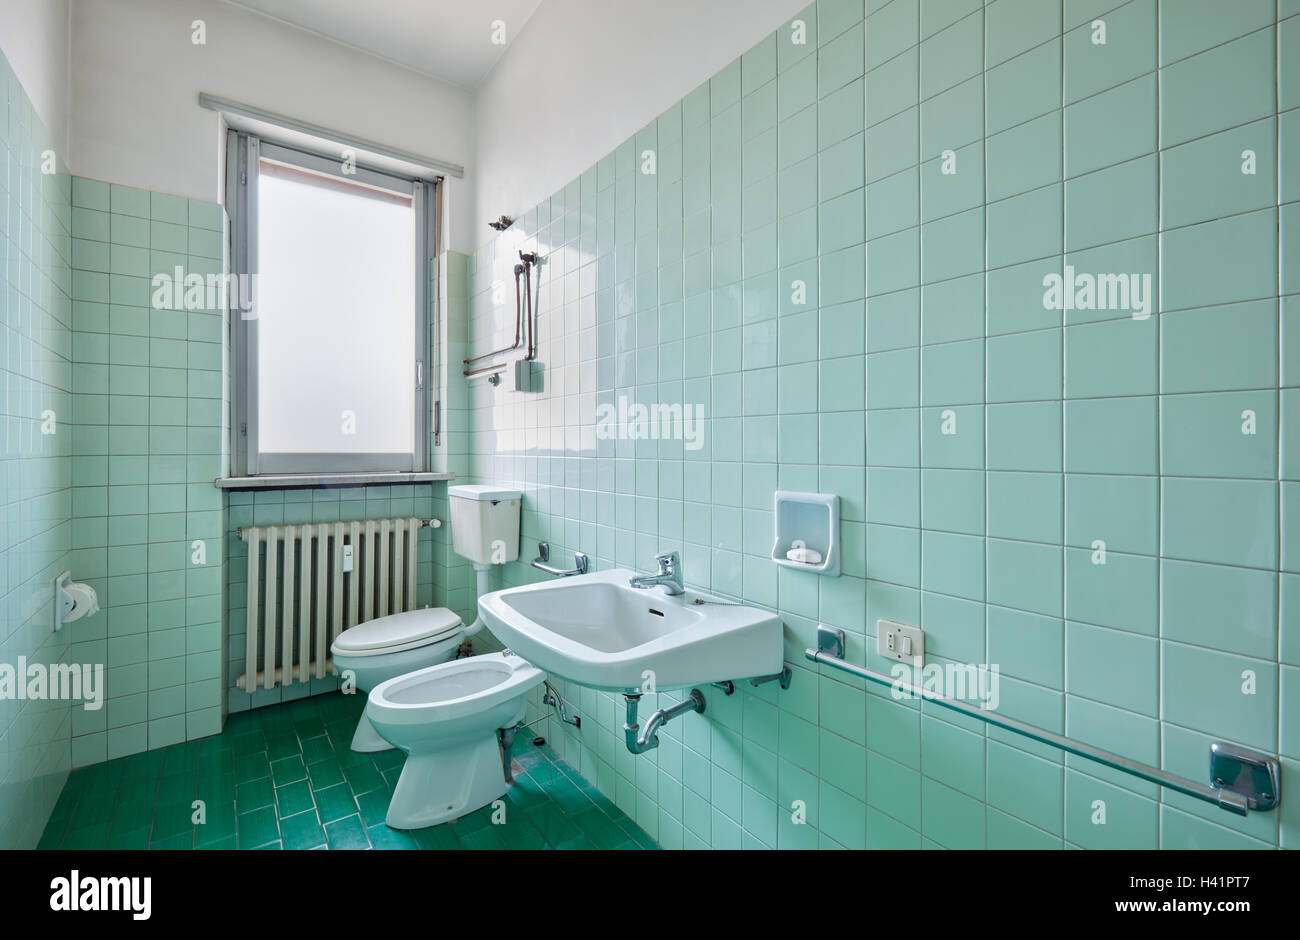 Vieille salle de bains avec carreaux verts de l'intérieur Banque D'Images